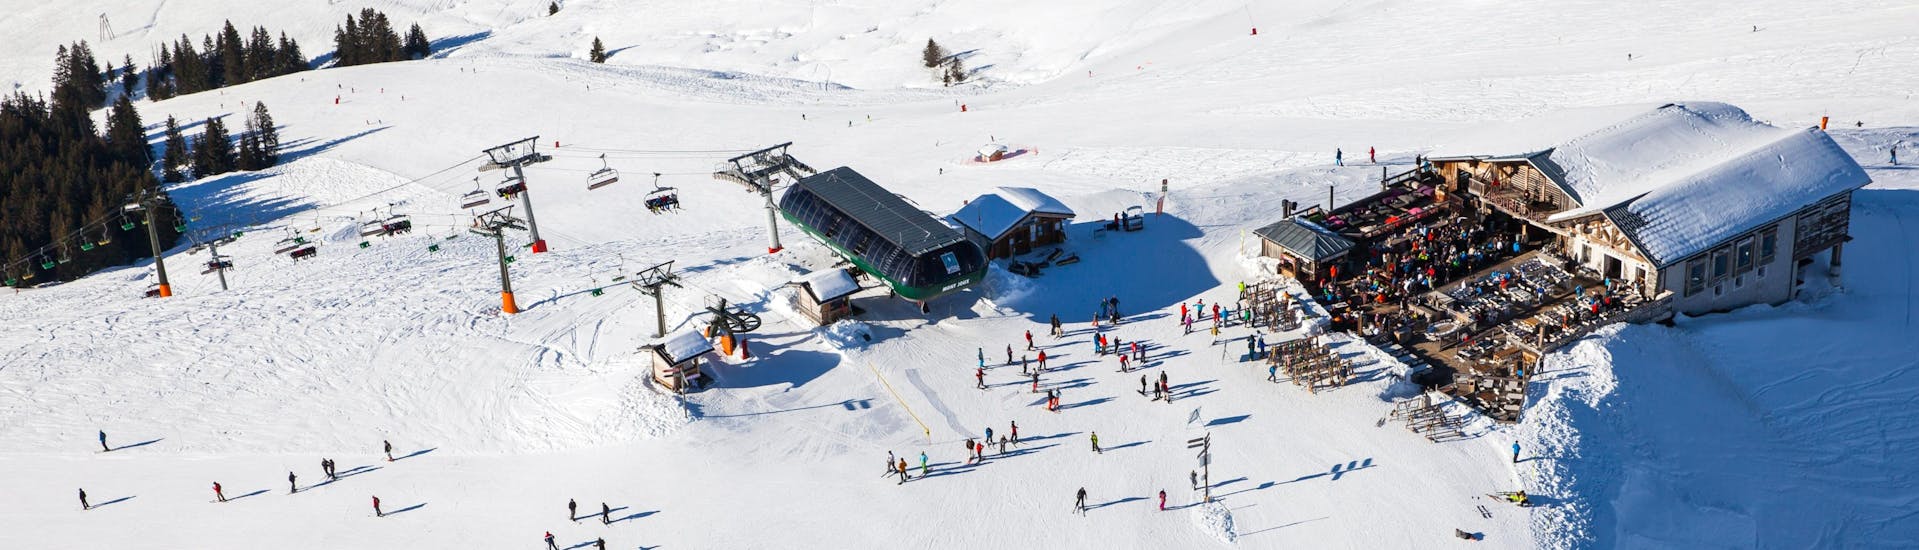 Tijdens een skiles met een skischool in Saint Gervais heb je een prachtig uitzicht op zonnige bergen.